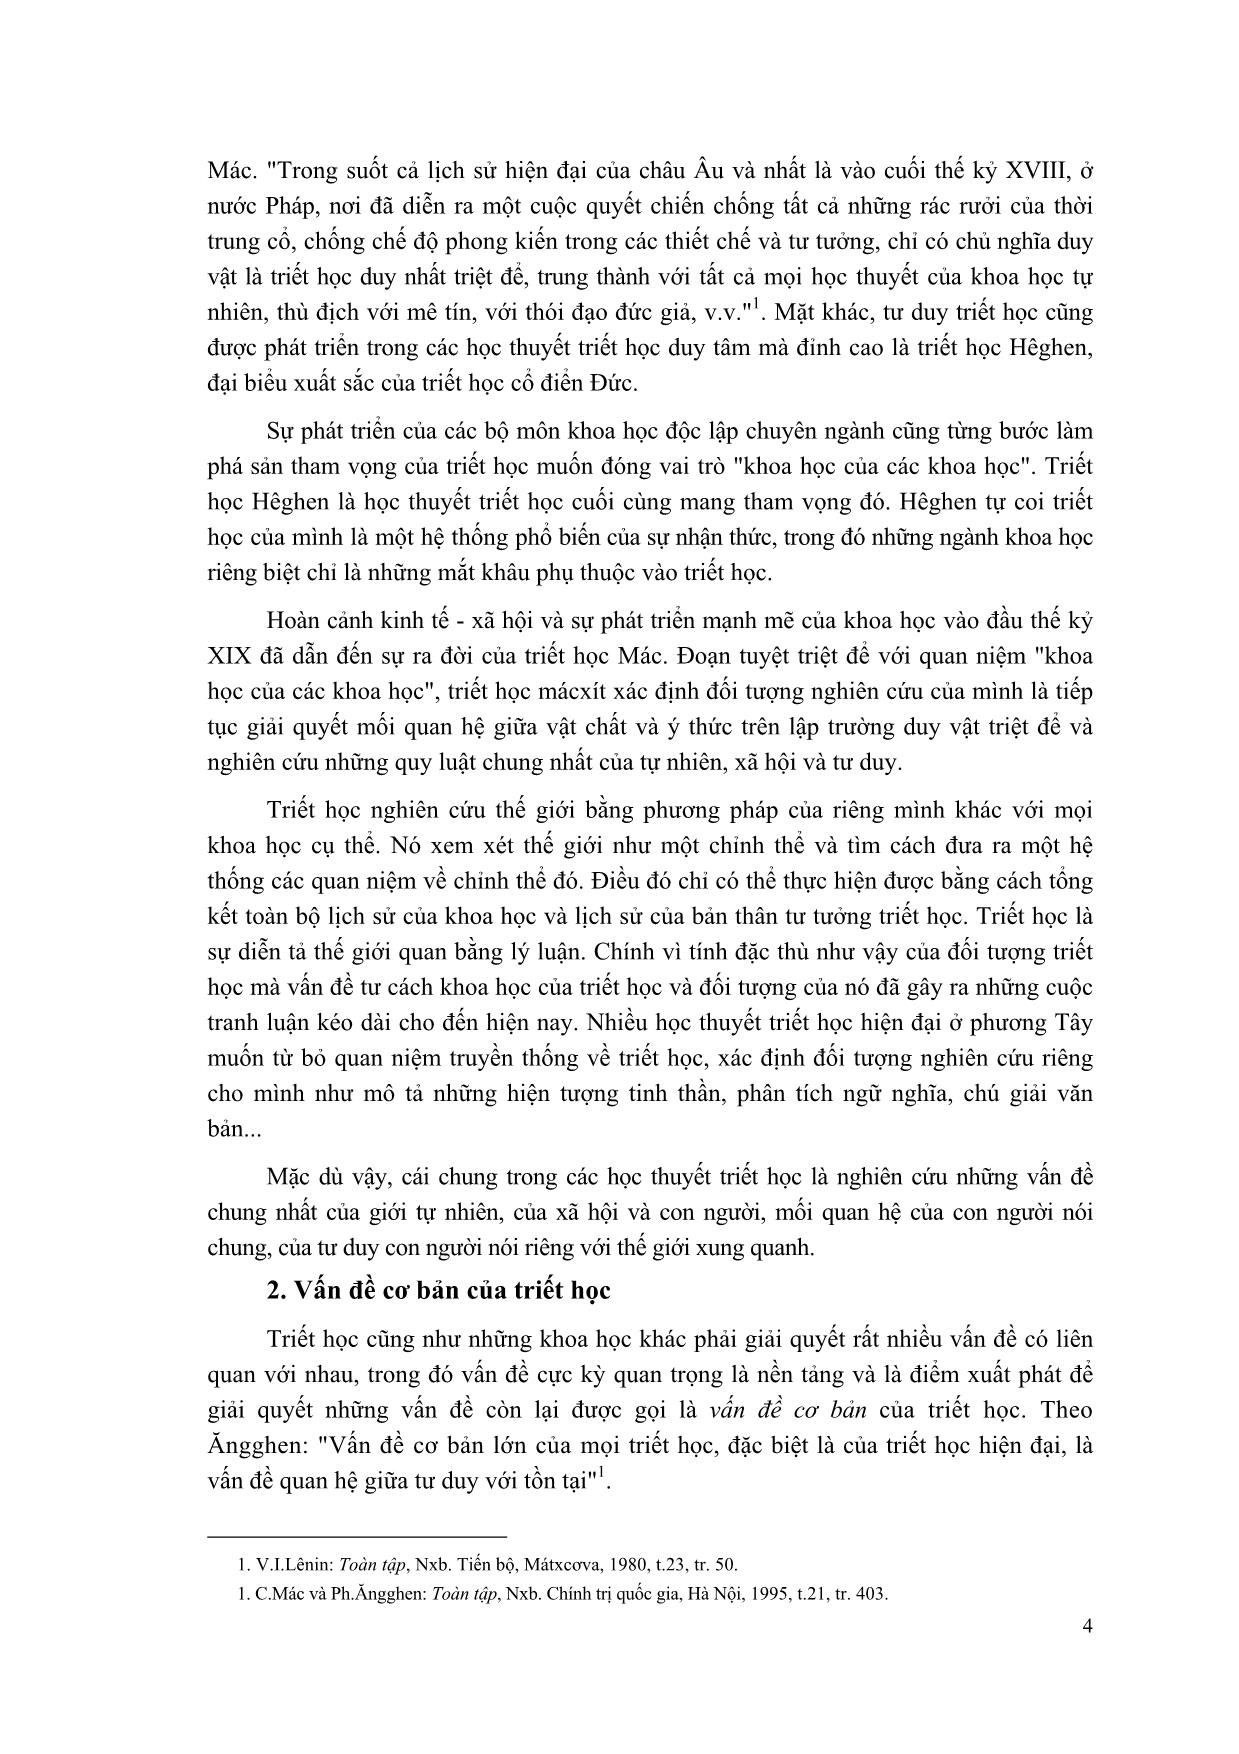 Giáo trình Triết học Mác - Lênin trang 5